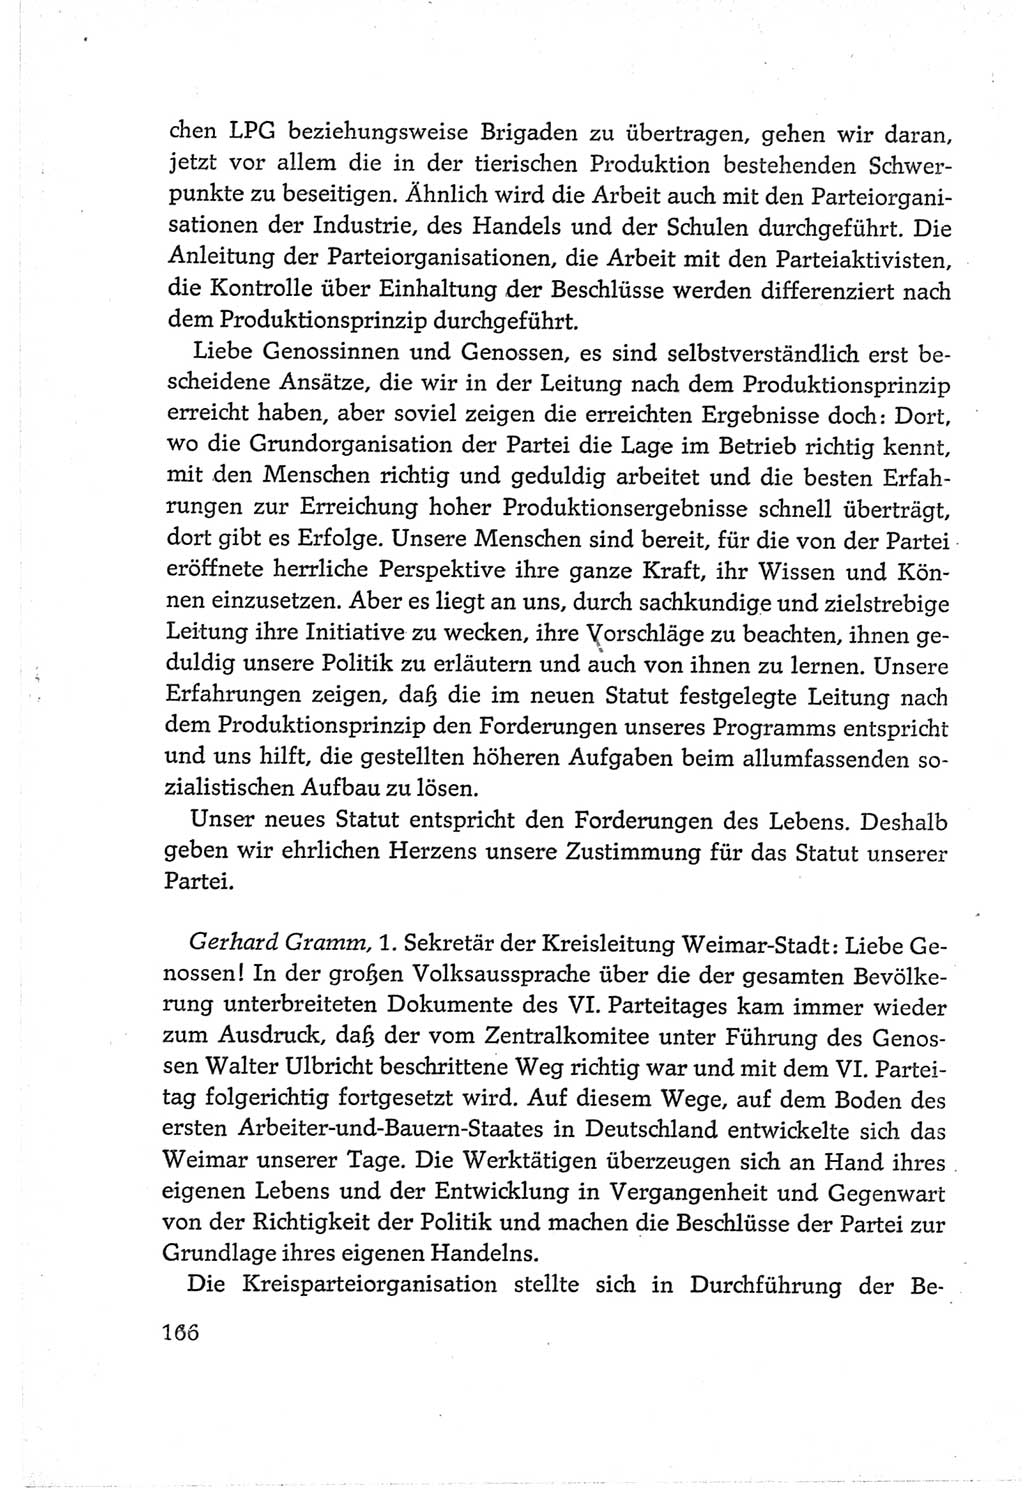 Protokoll der Verhandlungen des Ⅵ. Parteitages der Sozialistischen Einheitspartei Deutschlands (SED) [Deutsche Demokratische Republik (DDR)] 1963, Band Ⅲ, Seite 166 (Prot. Verh. Ⅵ. PT SED DDR 1963, Bd. Ⅲ, S. 166)